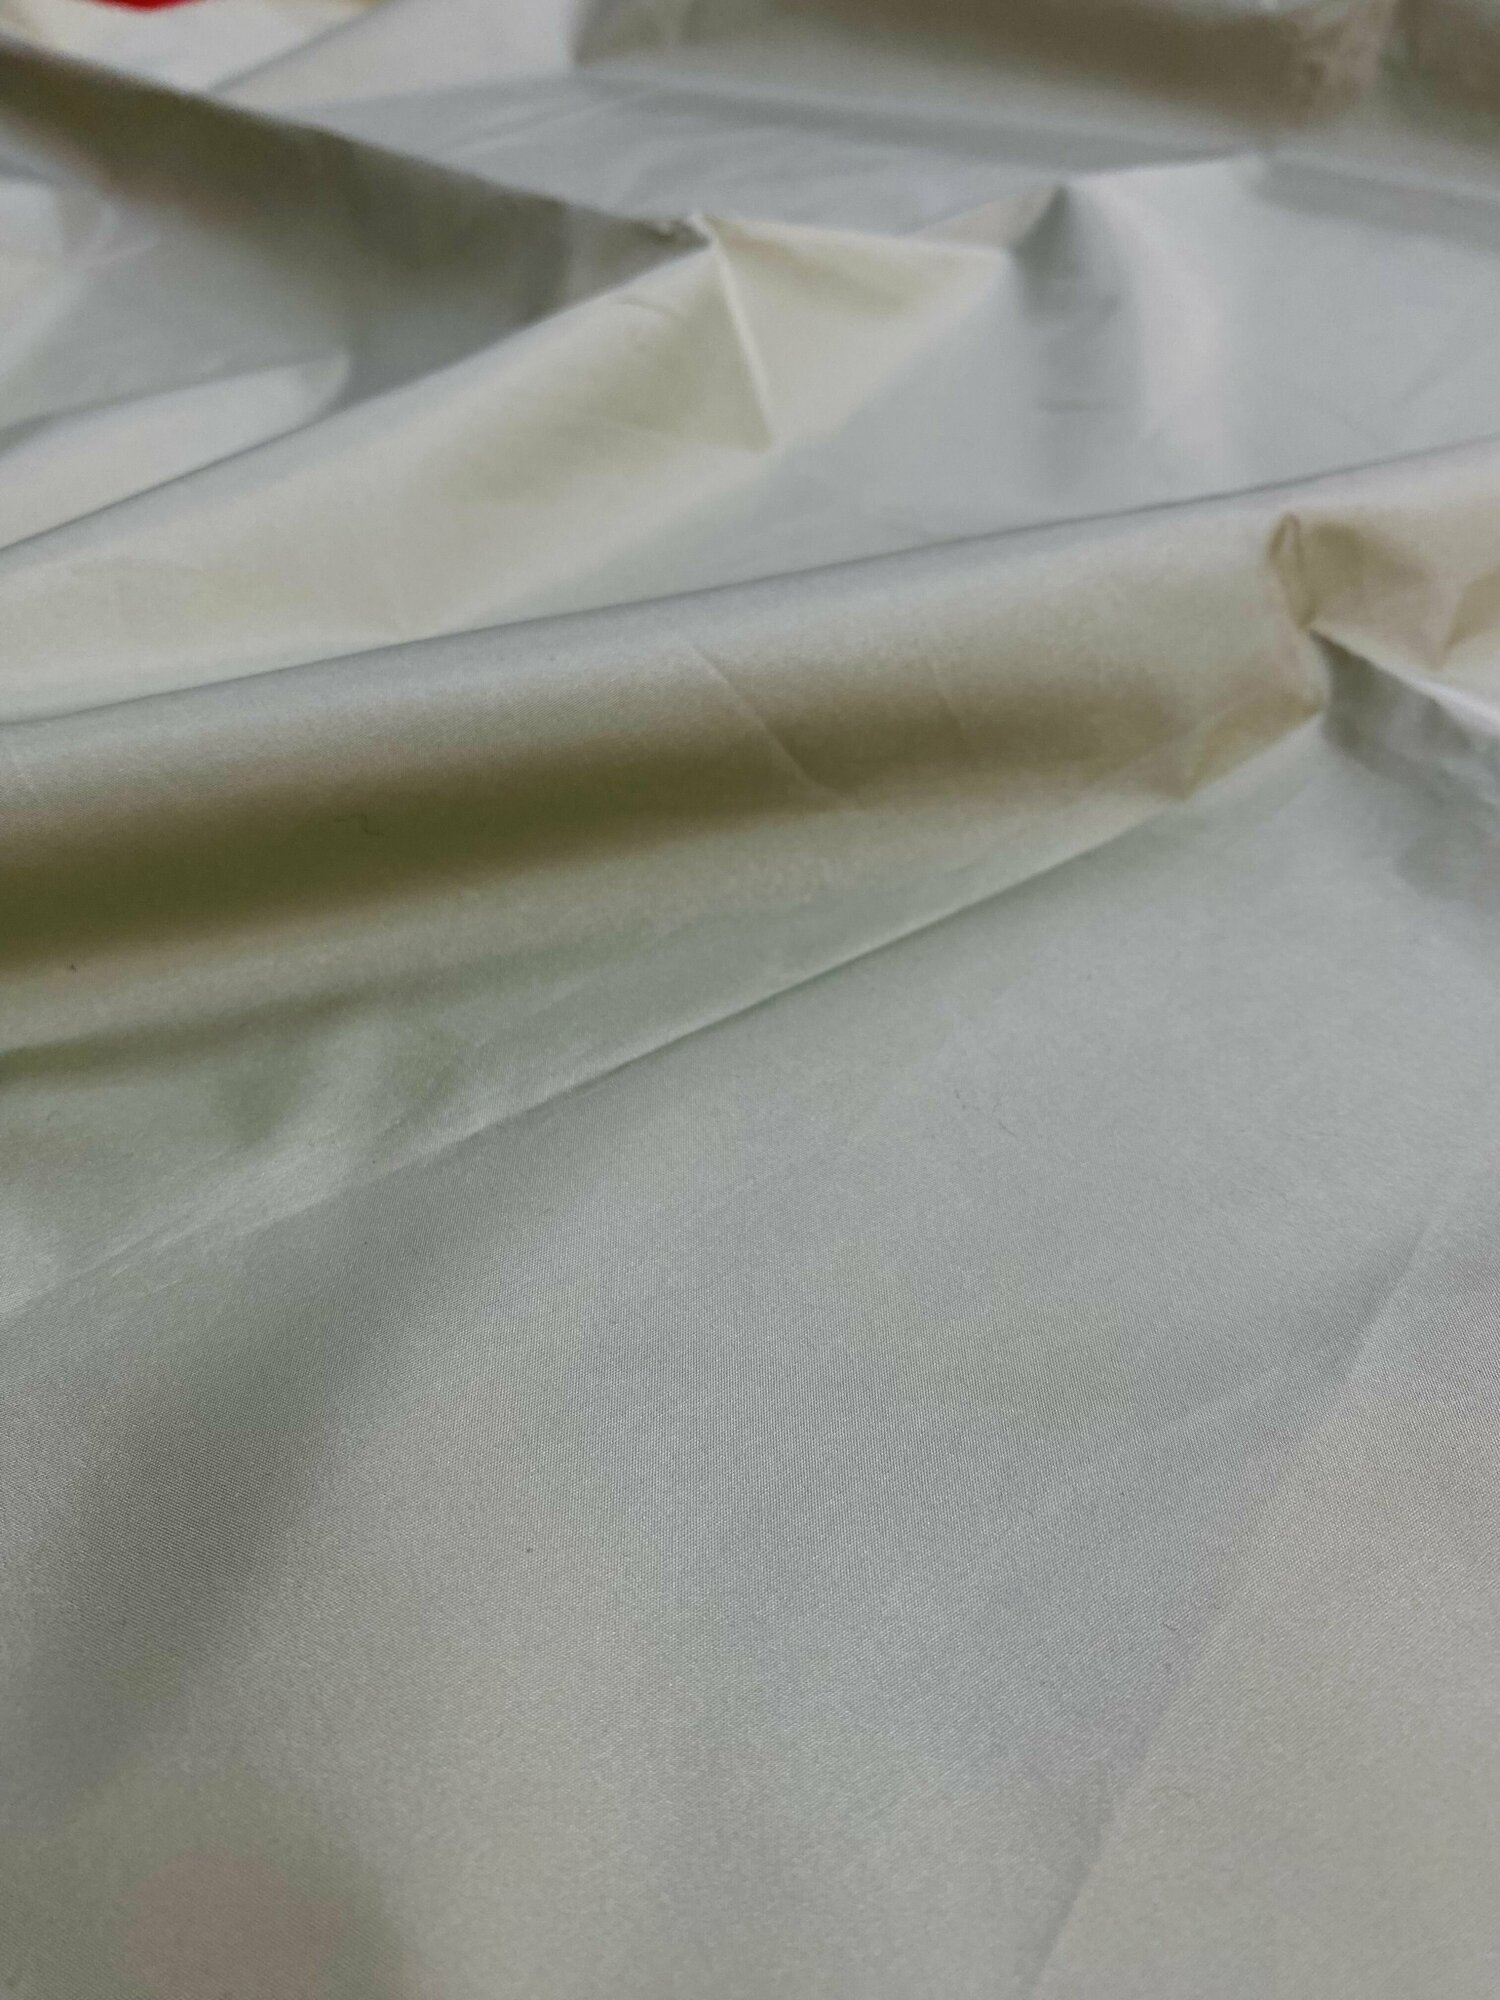 Плащевая курточная ткань дюспо на отрез, цвет зеленый, ширина 1,5 м, при заказе более 1м Вы получите единый отрез